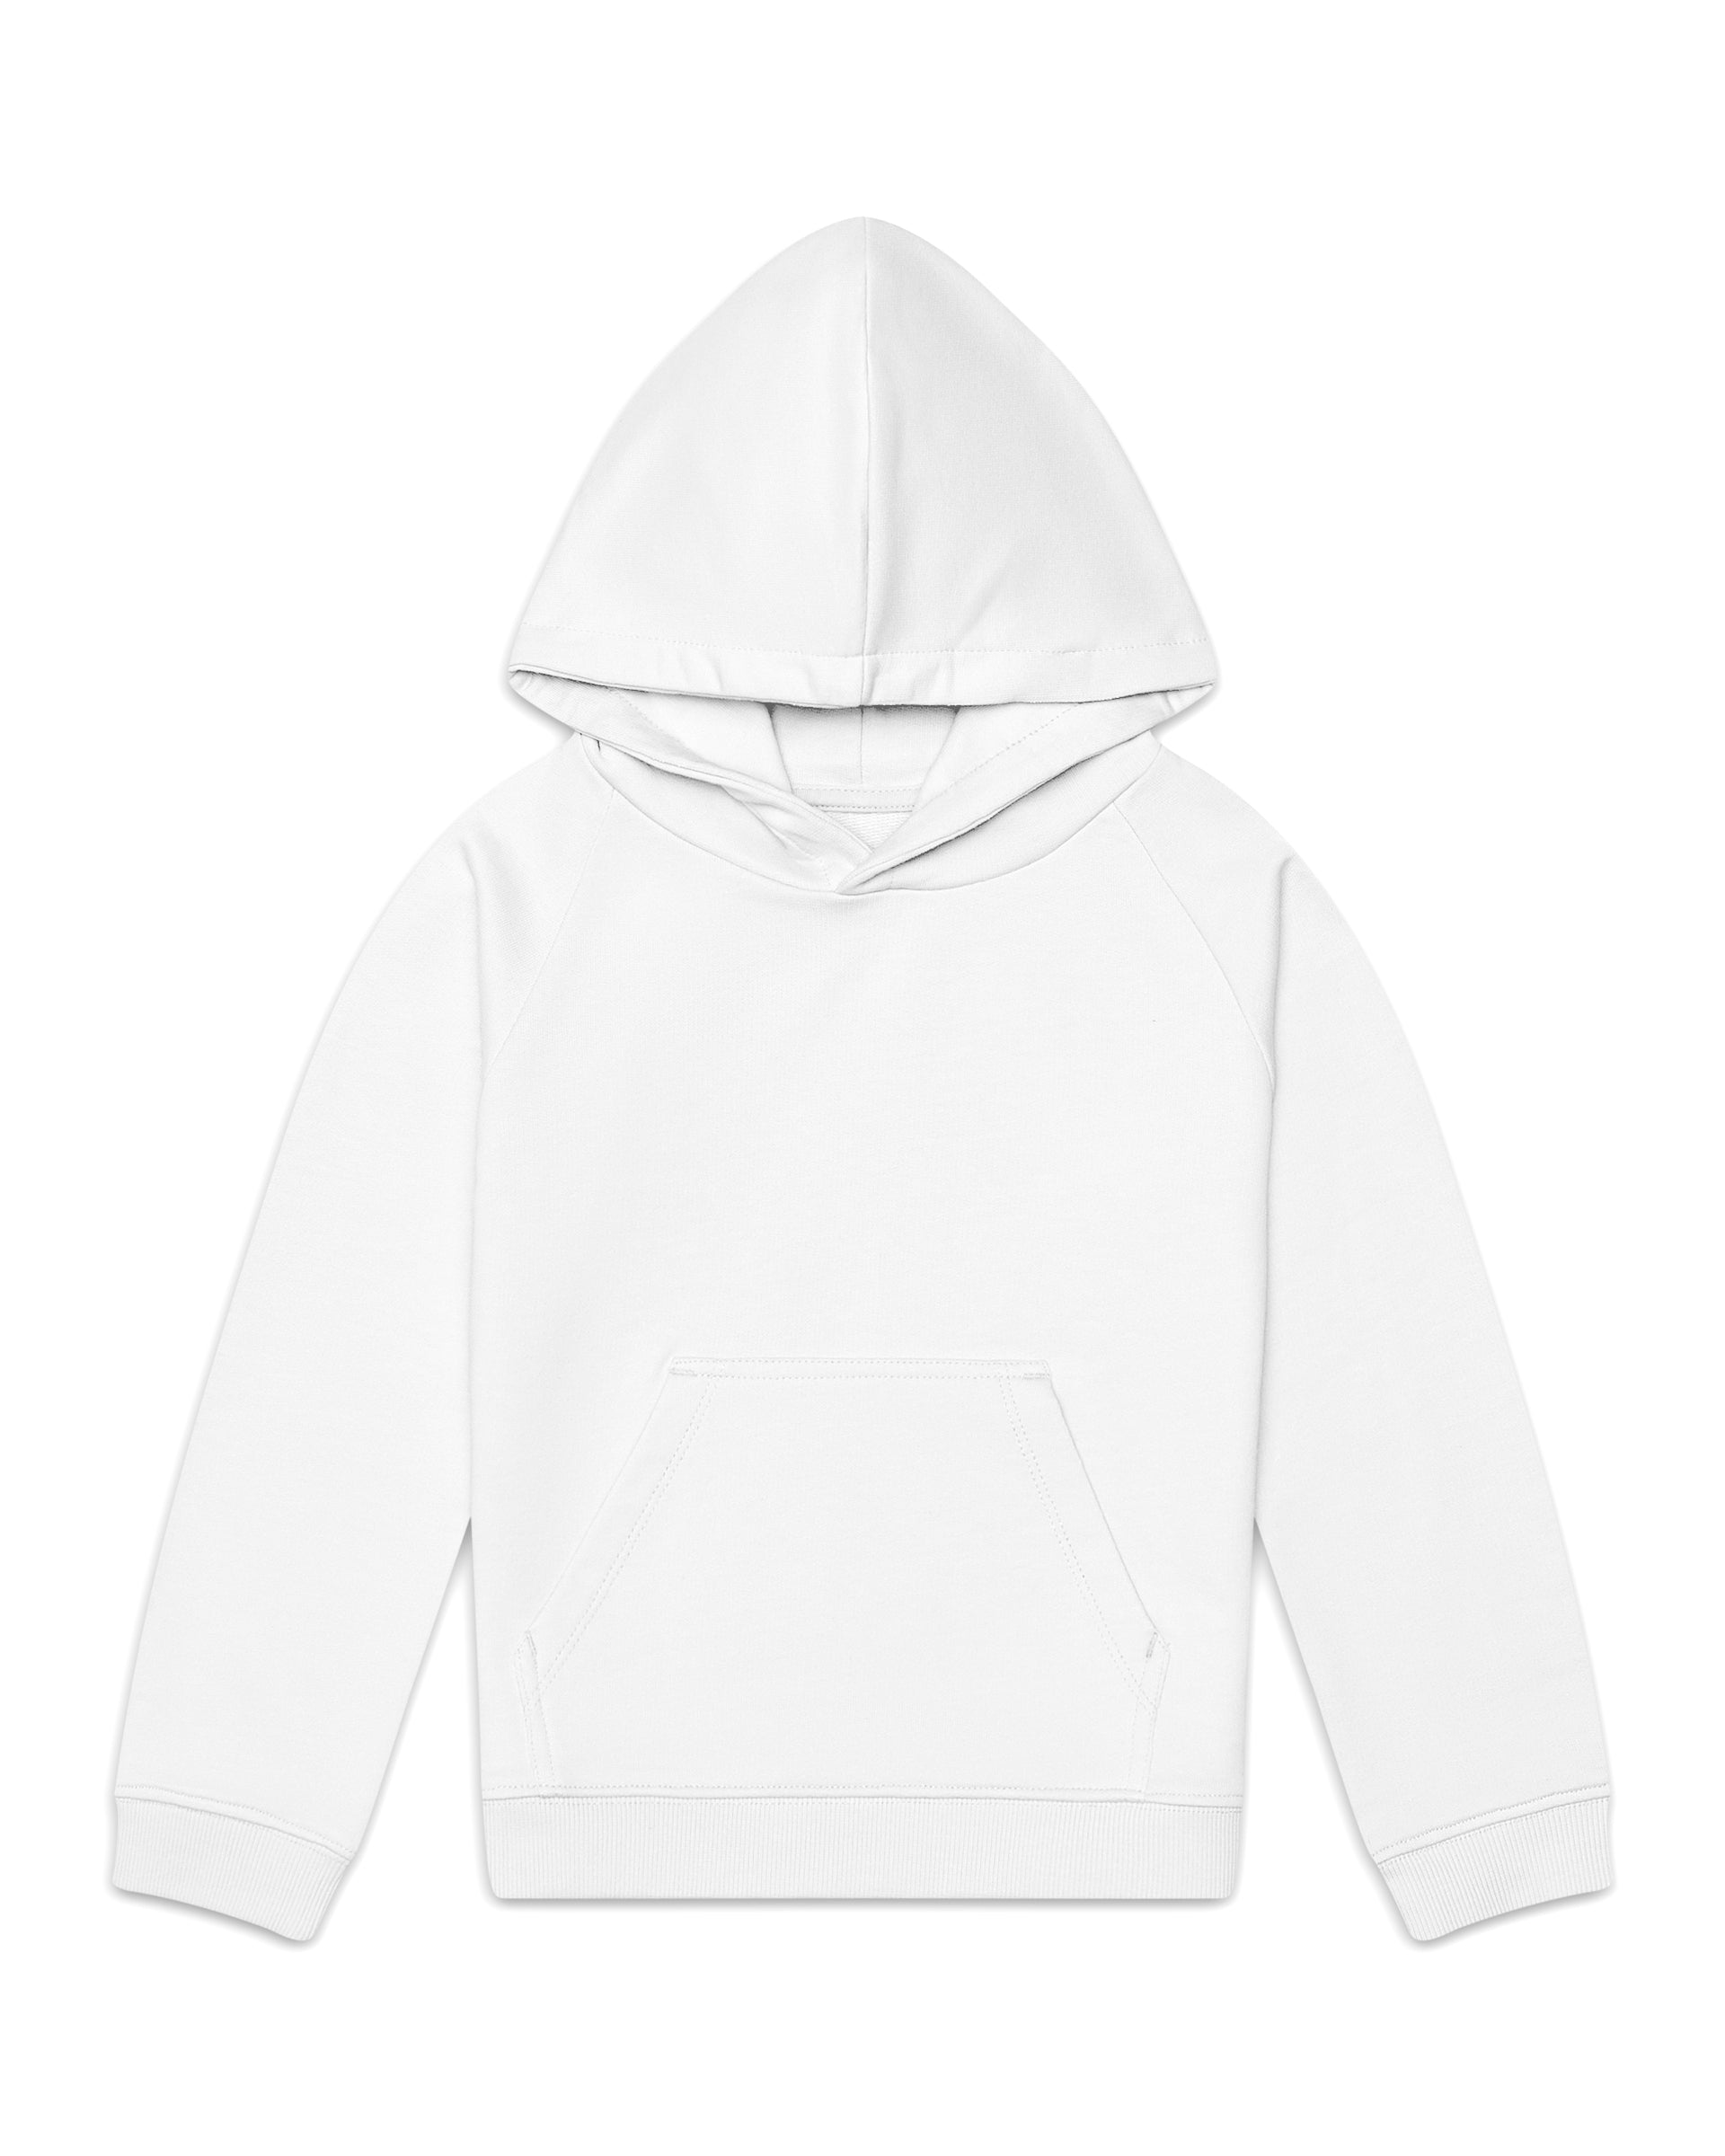 The Organic Hoodie Sweatshirt [White]